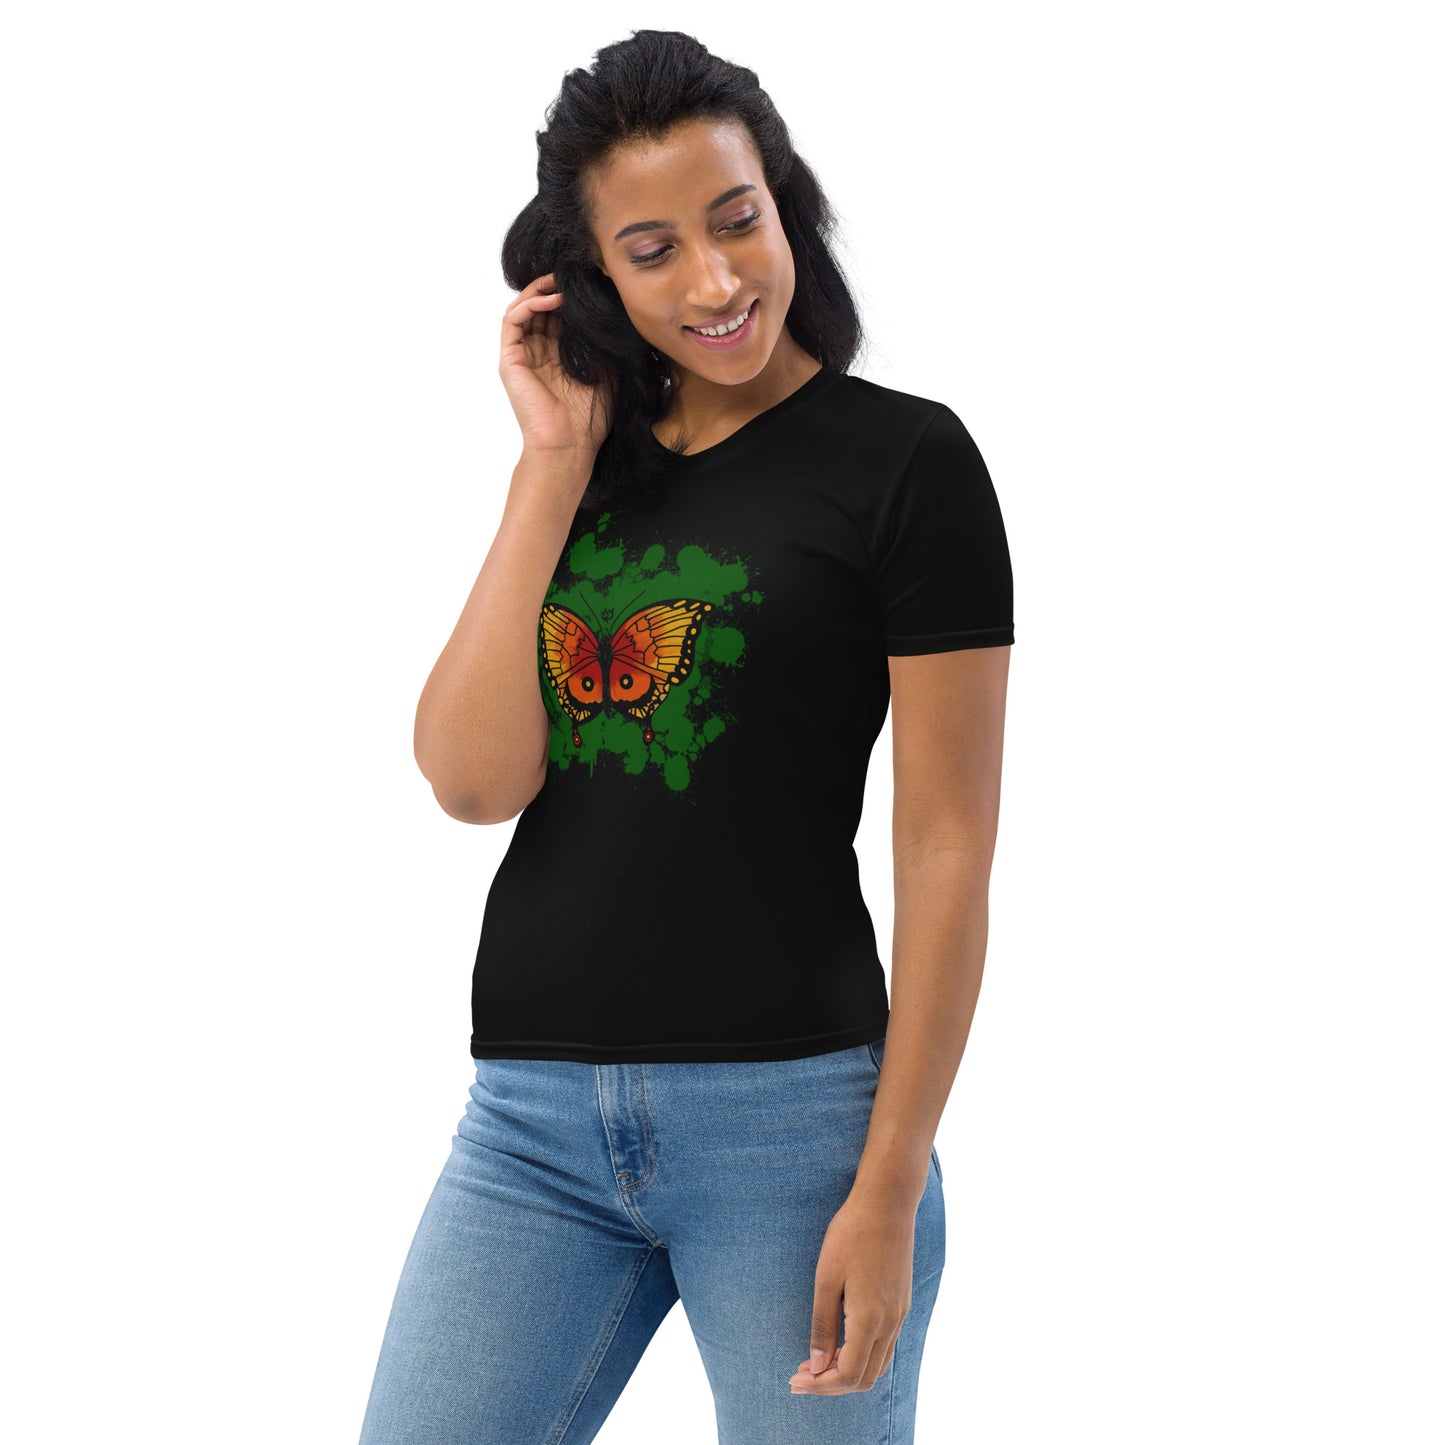 Flutter Women's T-shirt